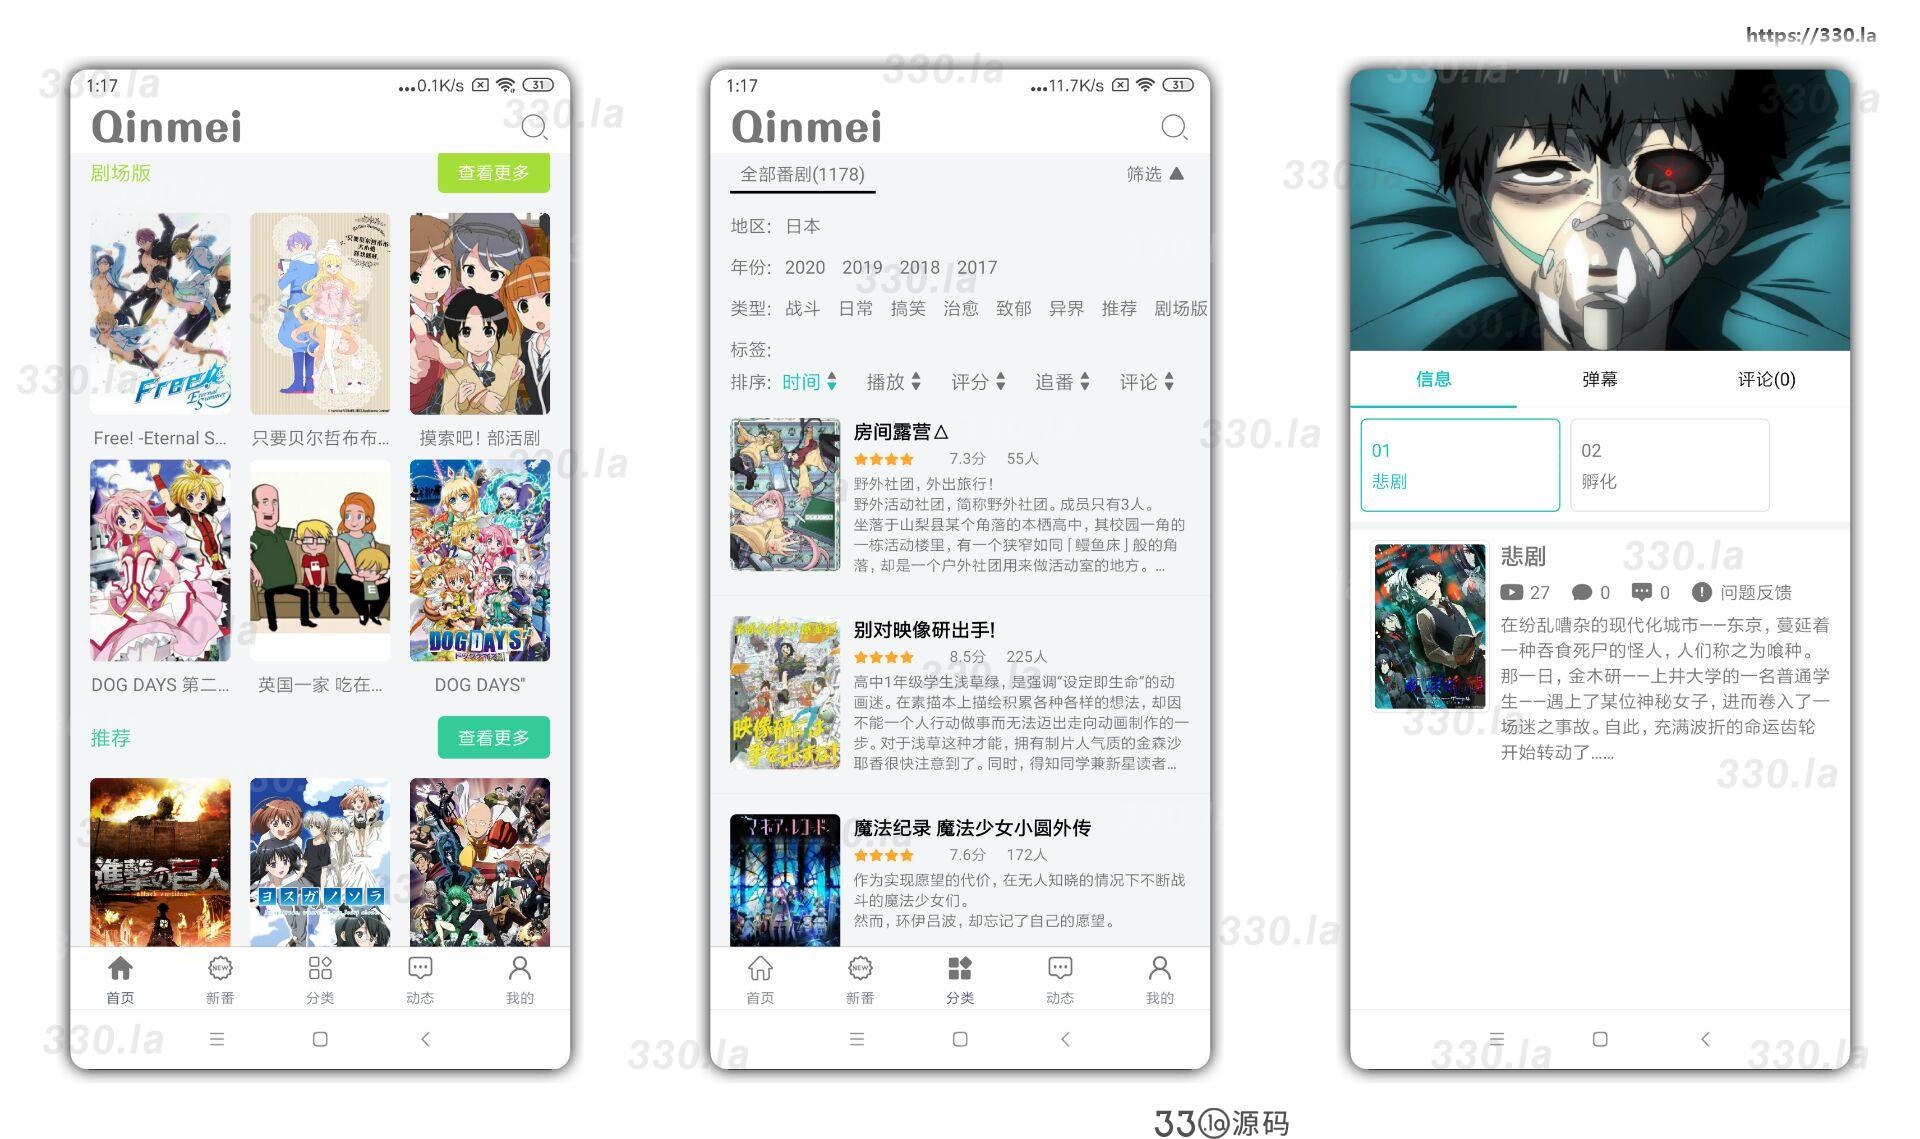 安卓版Qinmei 追番必备神器 缓冲快 无广告而且完全免费-第1张图片-330源码网